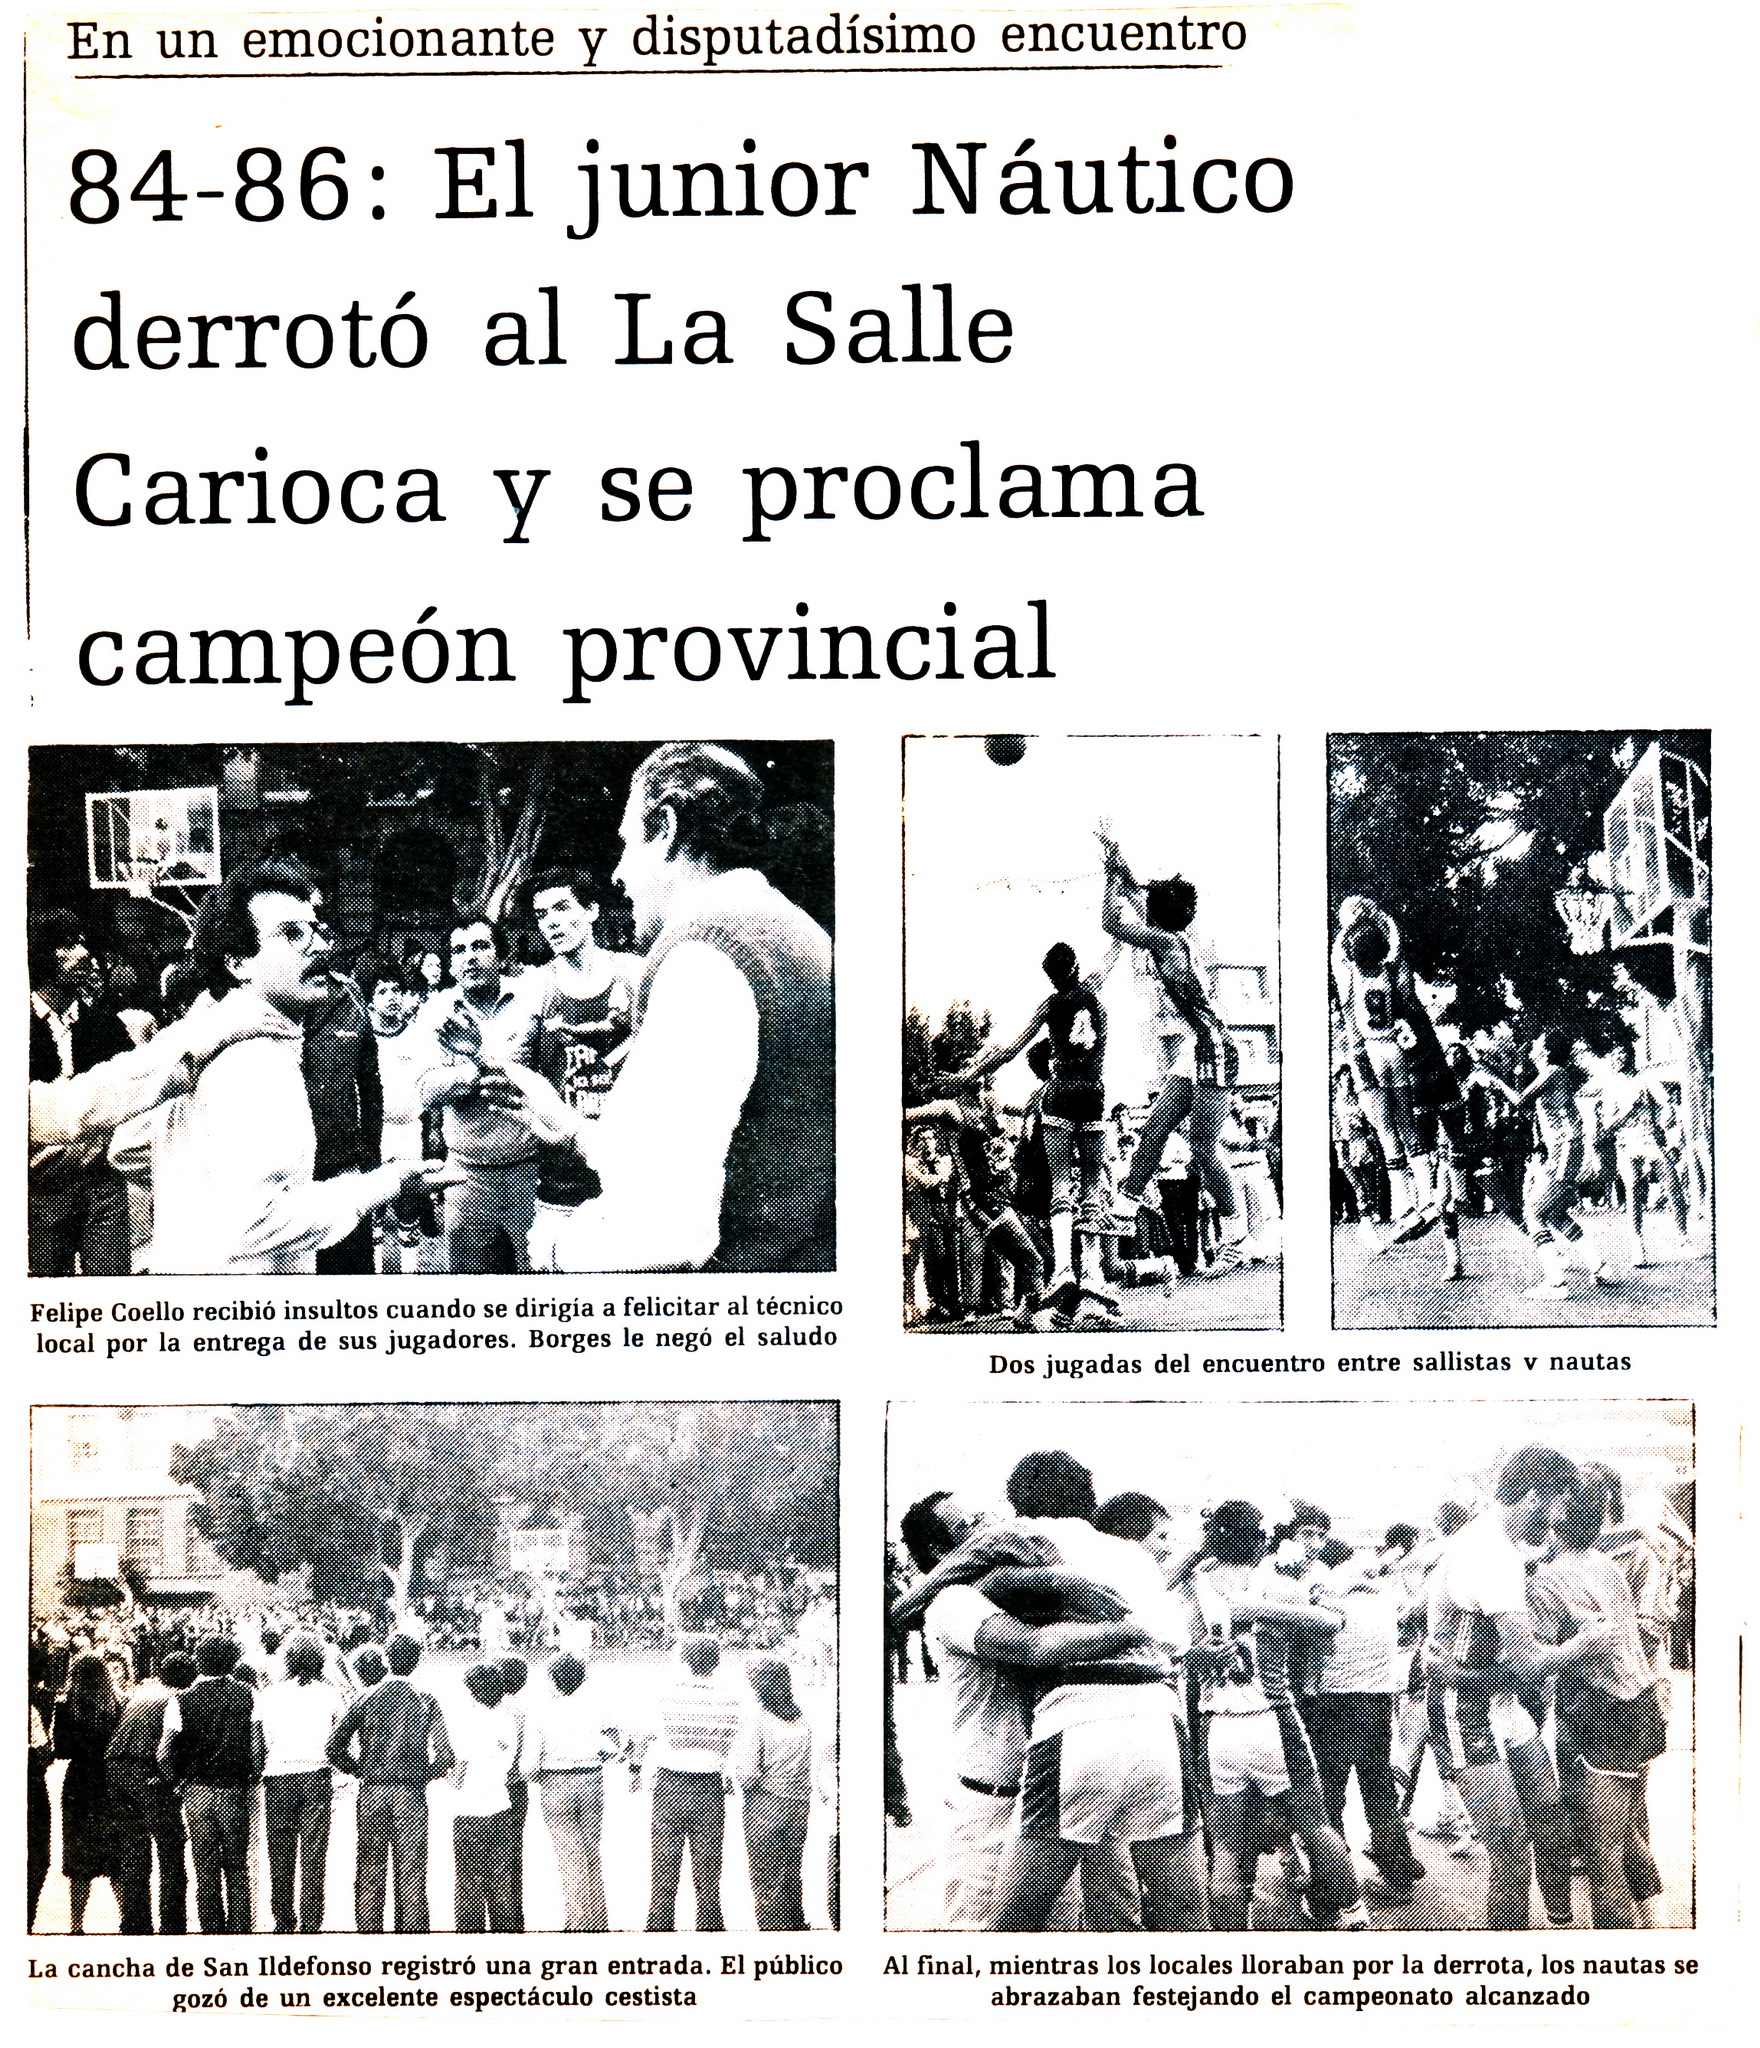 Enlace de partido La Salle - Náutico año 1983 en las canchas del colegio La Salle San Ildefonso